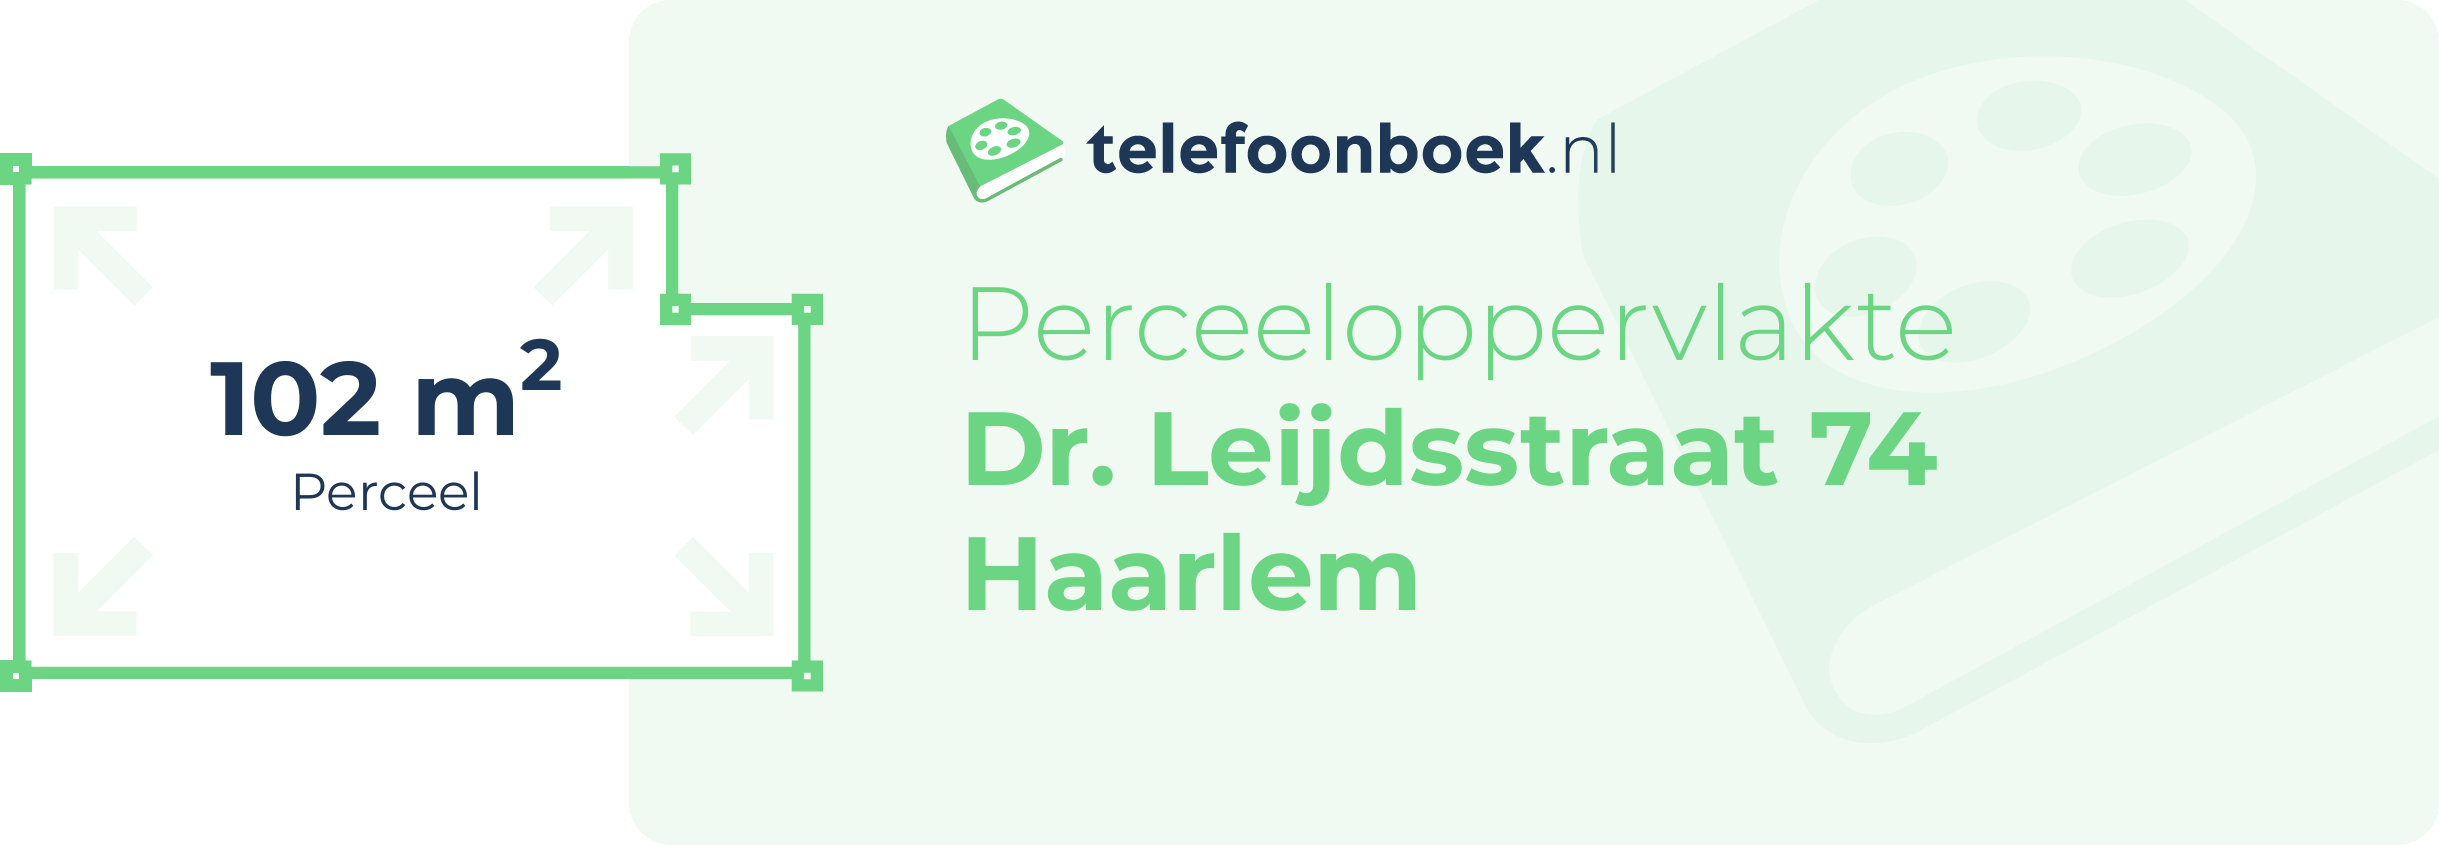 Perceeloppervlakte Dr. Leijdsstraat 74 Haarlem